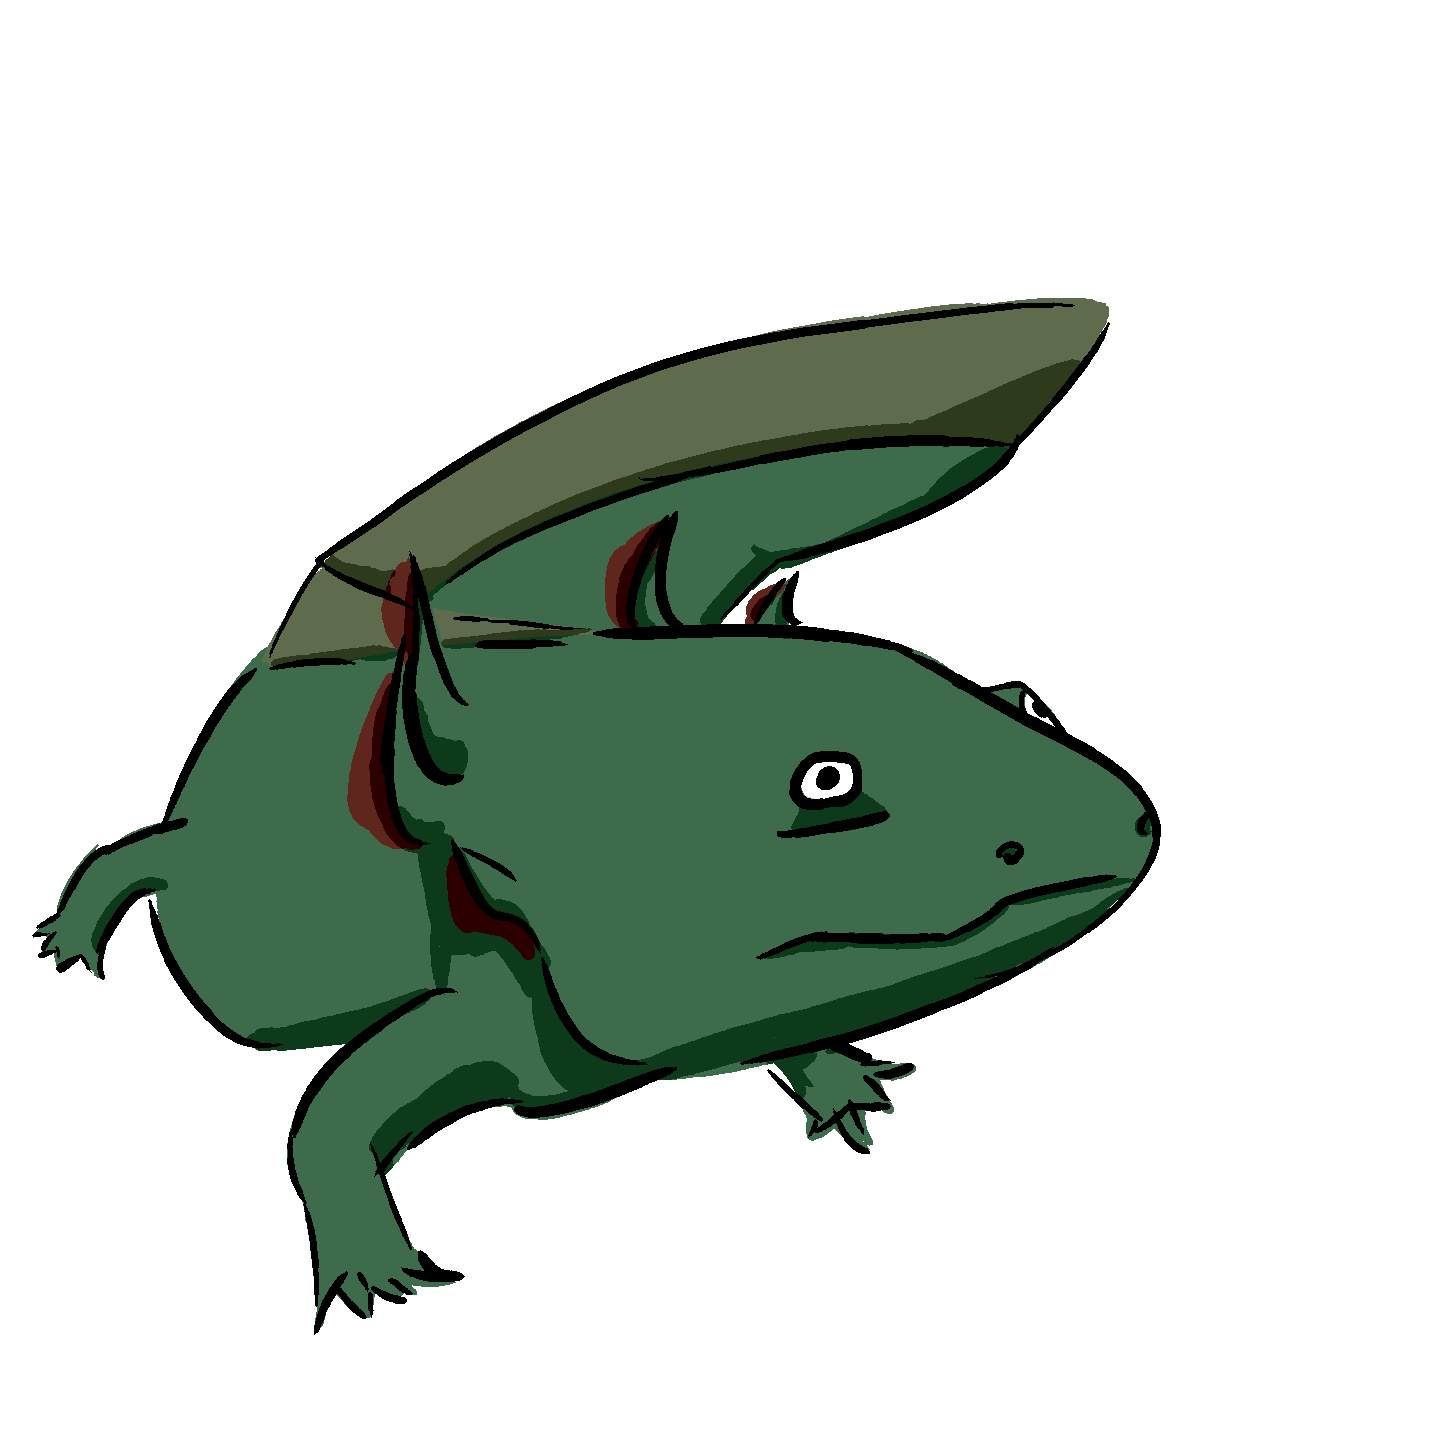 Image of an Axolotl